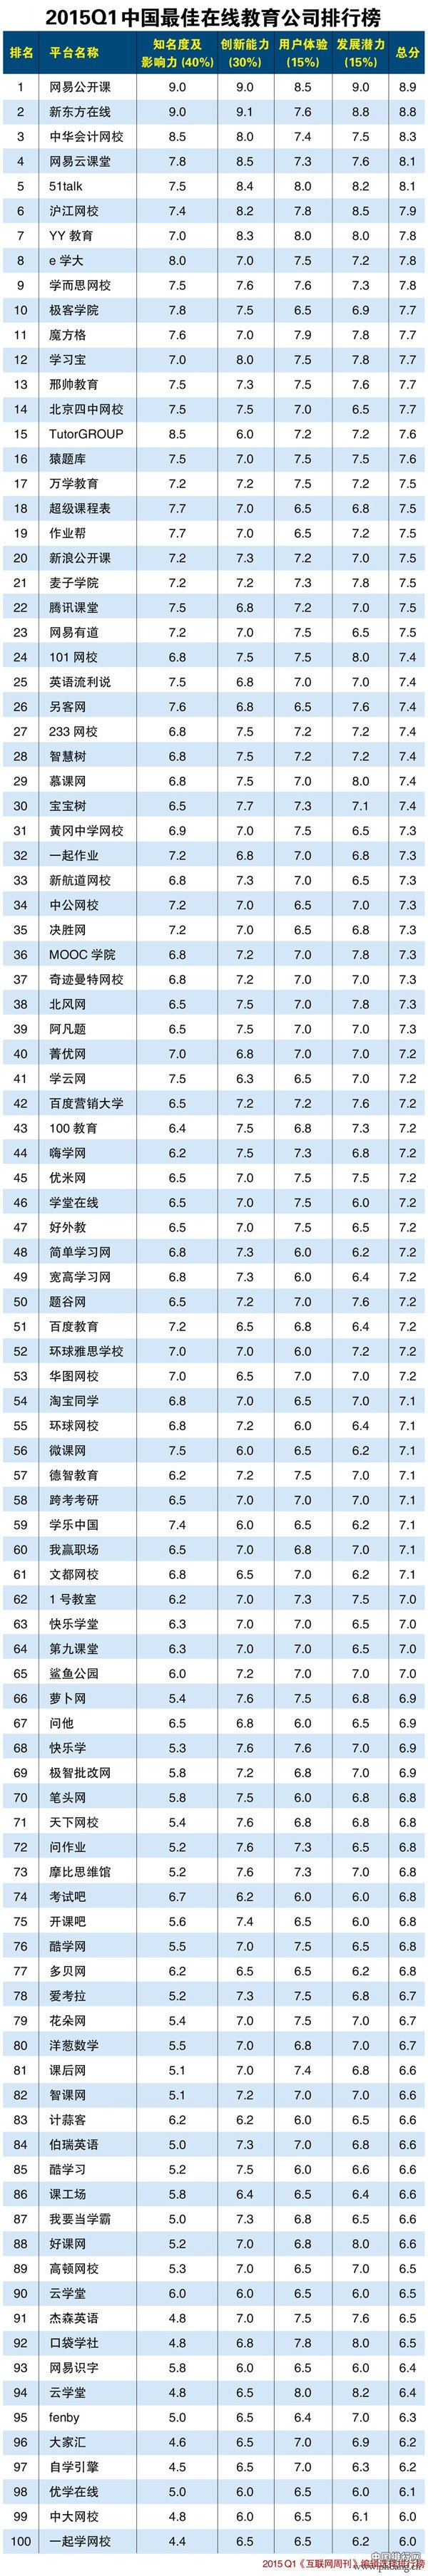 2015年第一季度中国最佳在线教育公司排行榜